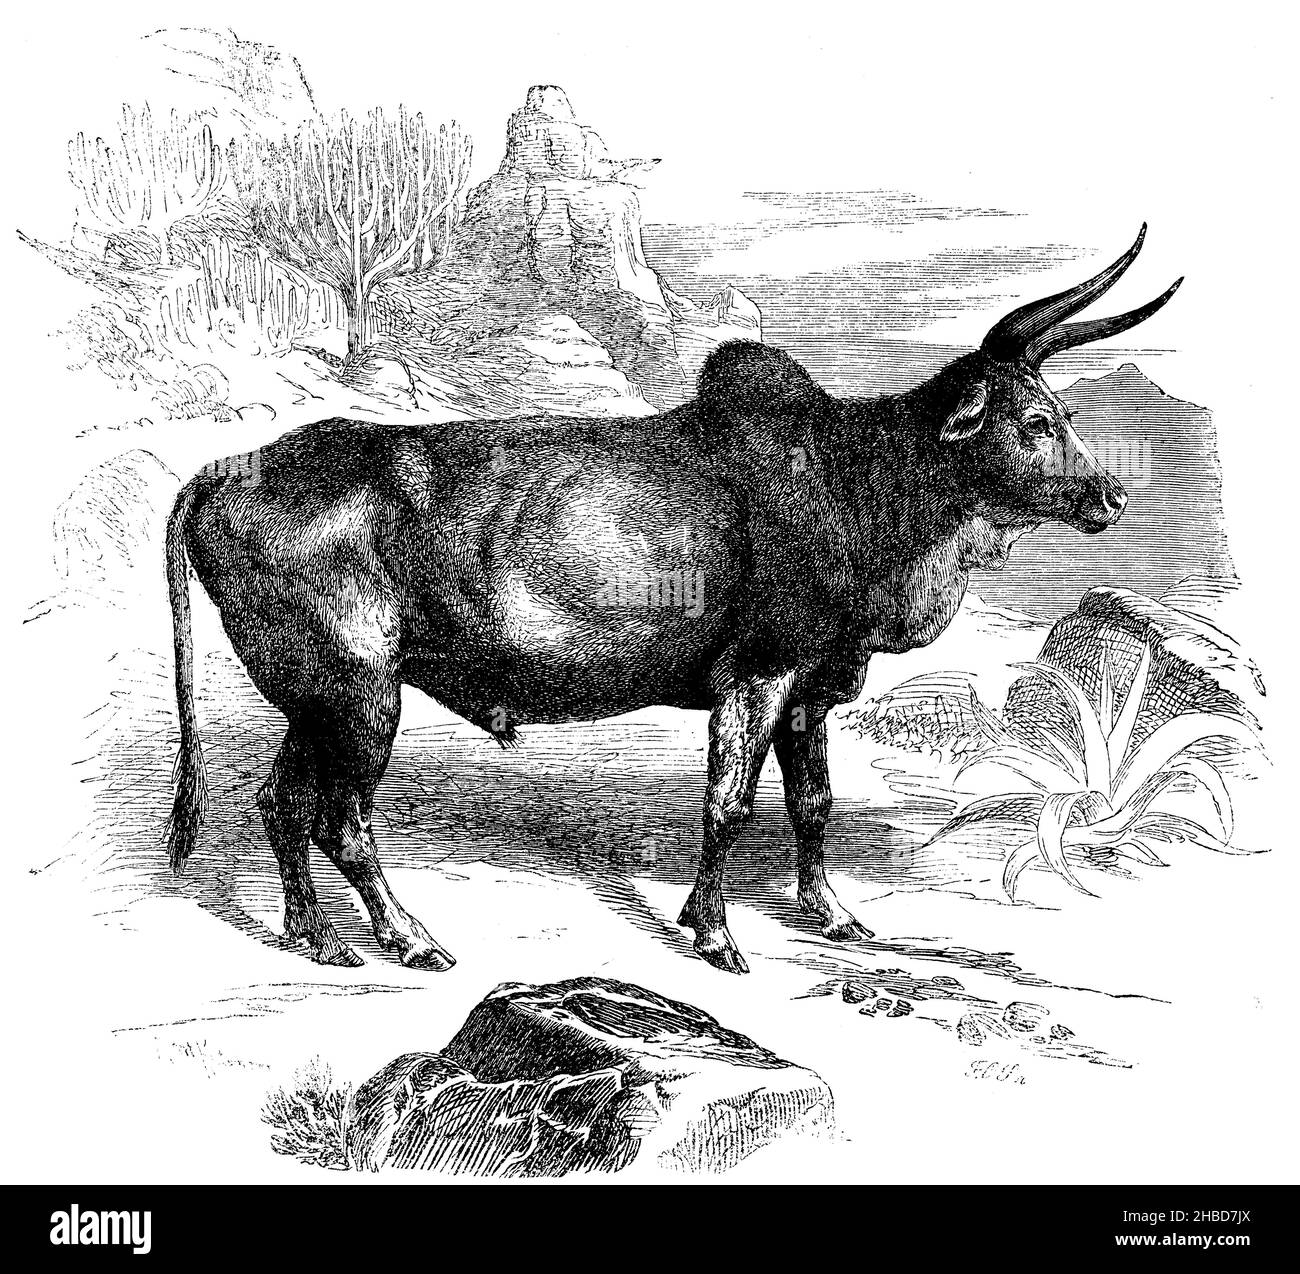 African humped ox, , R[obert] Kretschmer und F.O. S[chmid} (zoology book, 1870), Afrikanischer Buckelochse, Bœuf à bosse africain Stock Photo